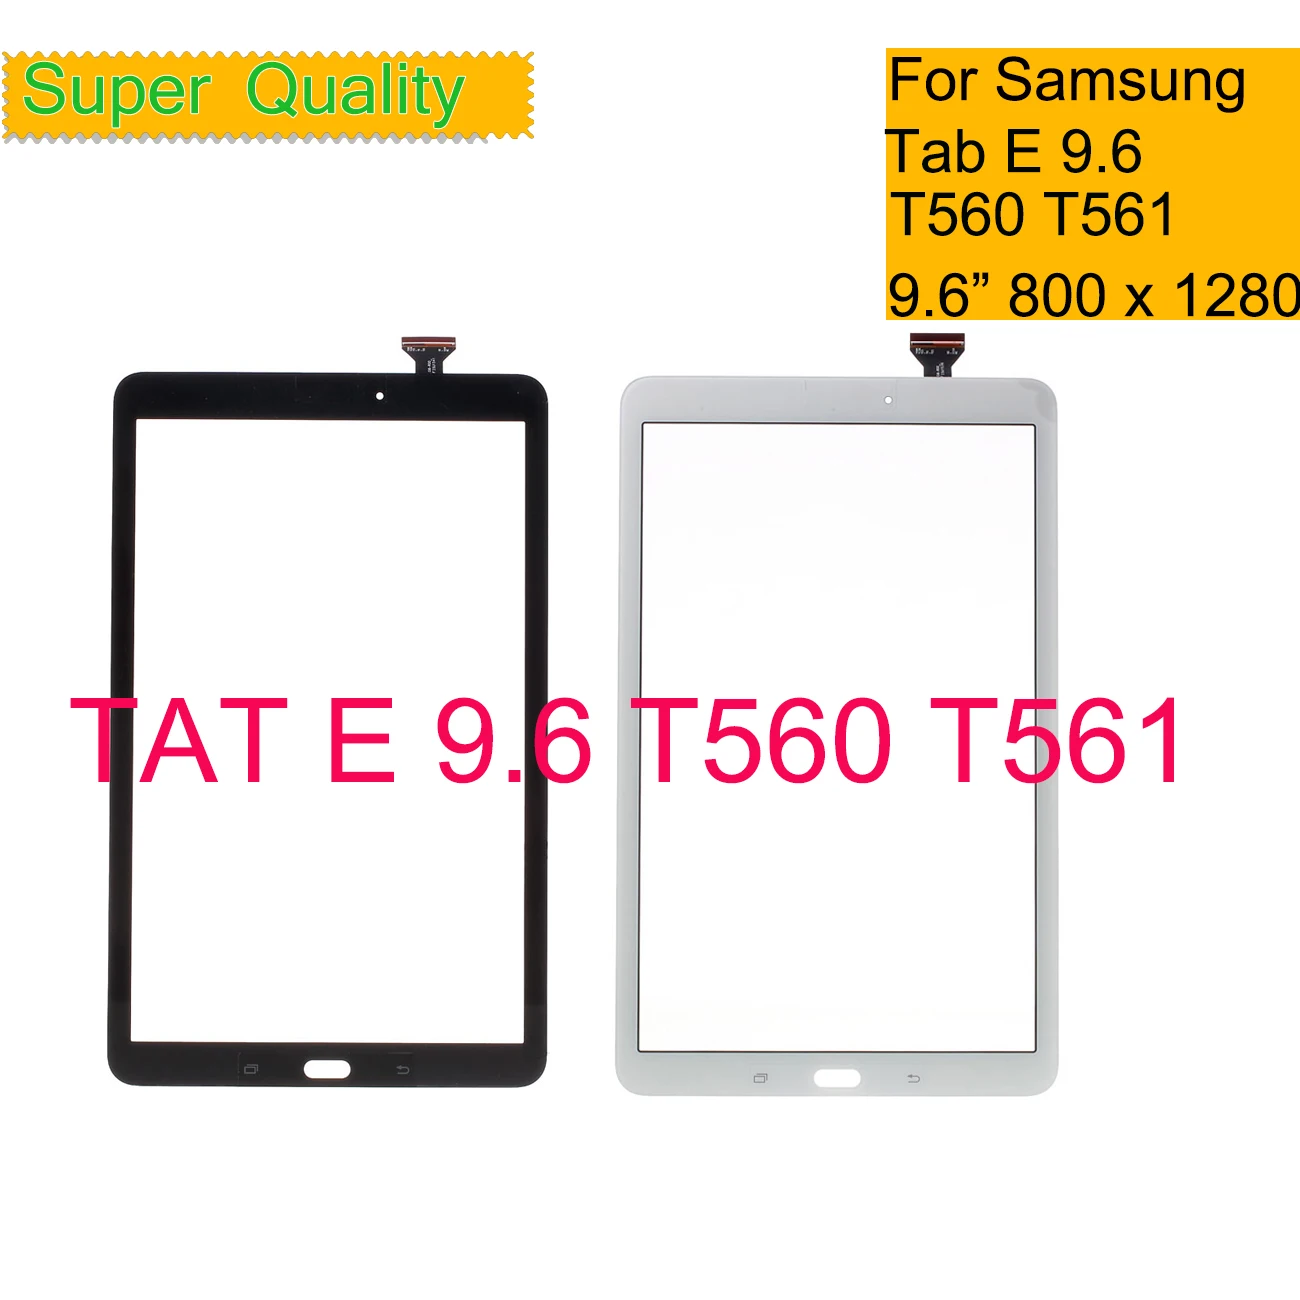 Сенсорный экран для Samsung Galaxy Tab E 9,6 SM-T560 SM-T561 T560 T561 сенсорный экран дигитайзер панель сенсор стекло планшета